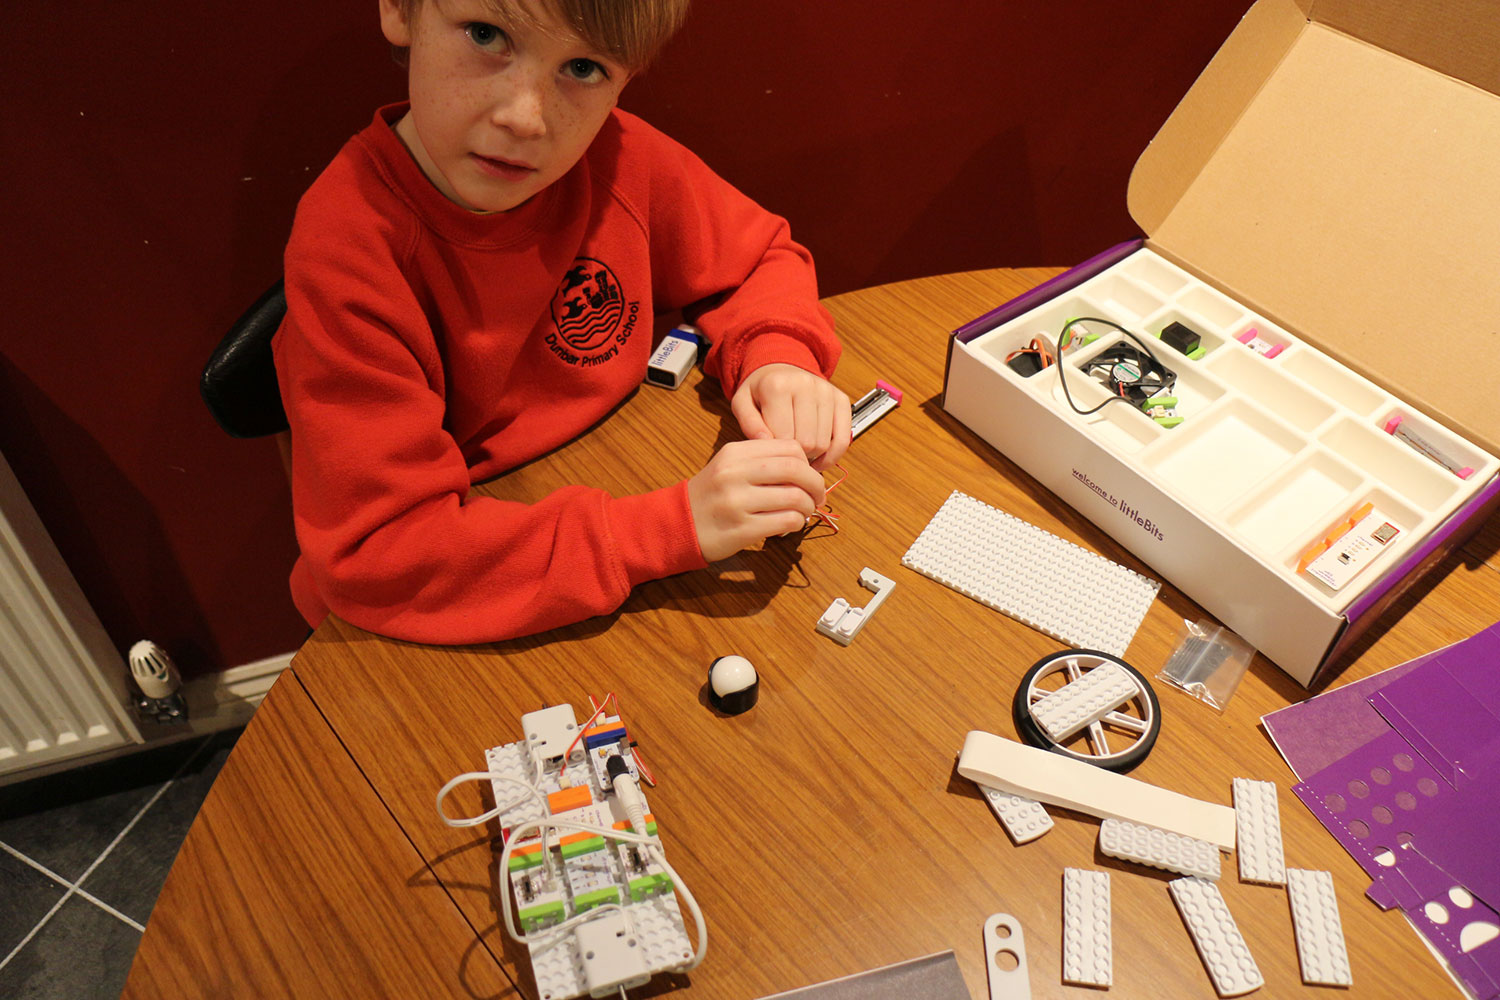 LittleBits Gizmos & Gadgets